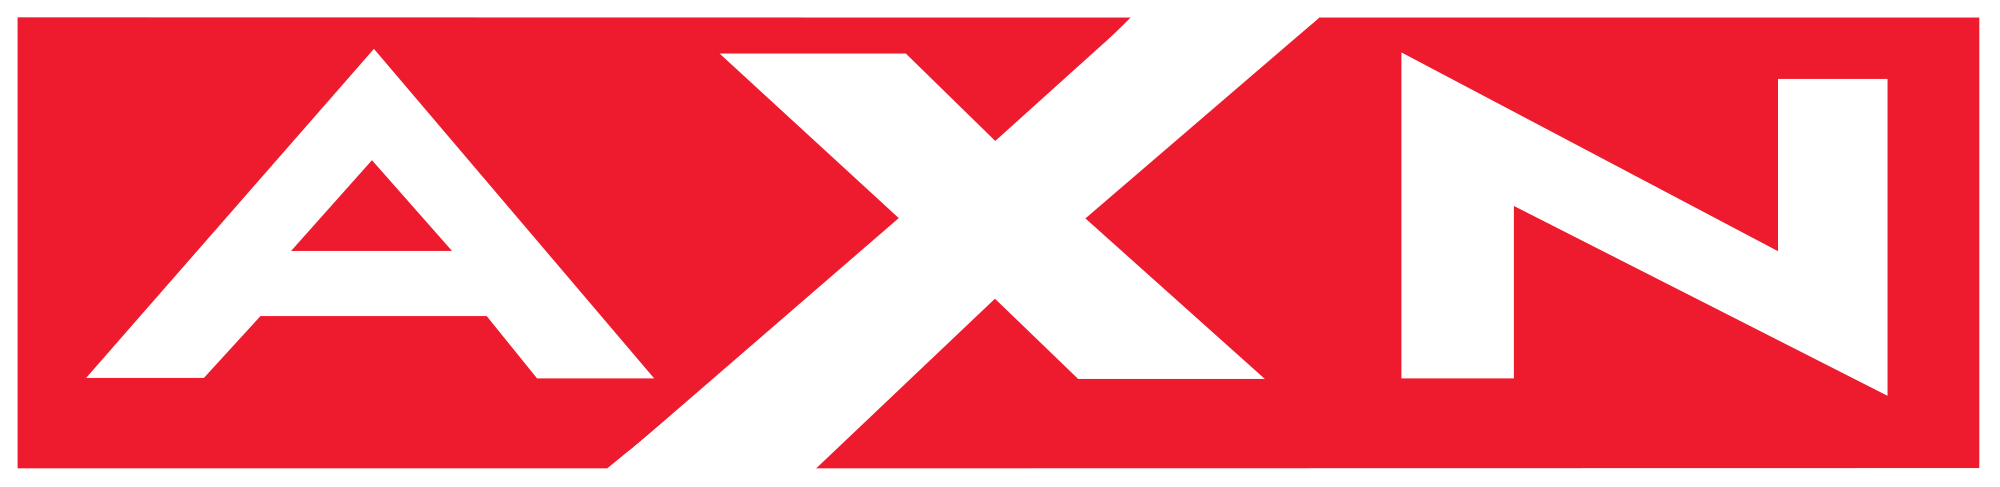 AXN Black logo.png - Axn Logo